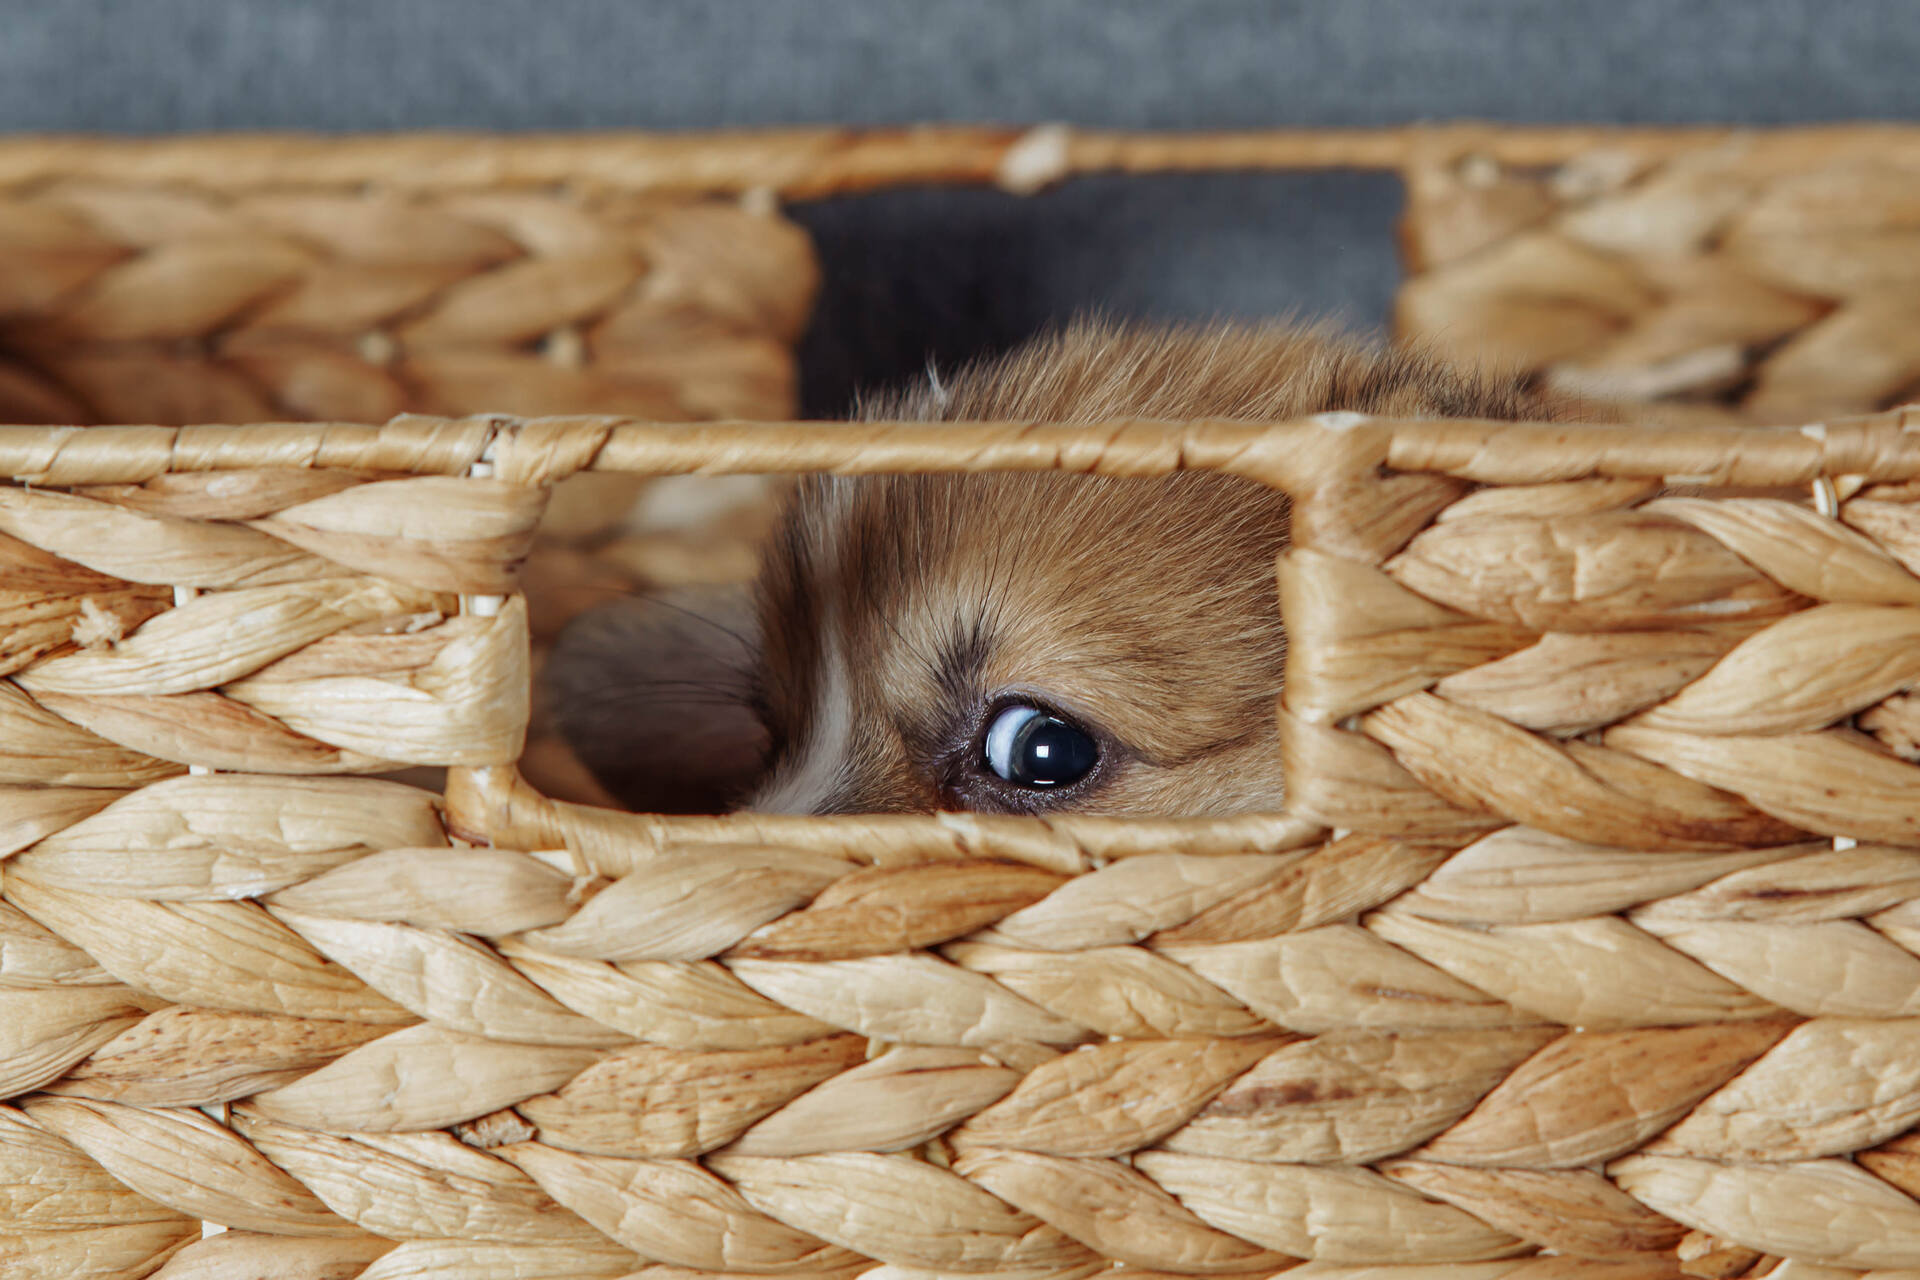 A scared puppy hiding in a wicker basket